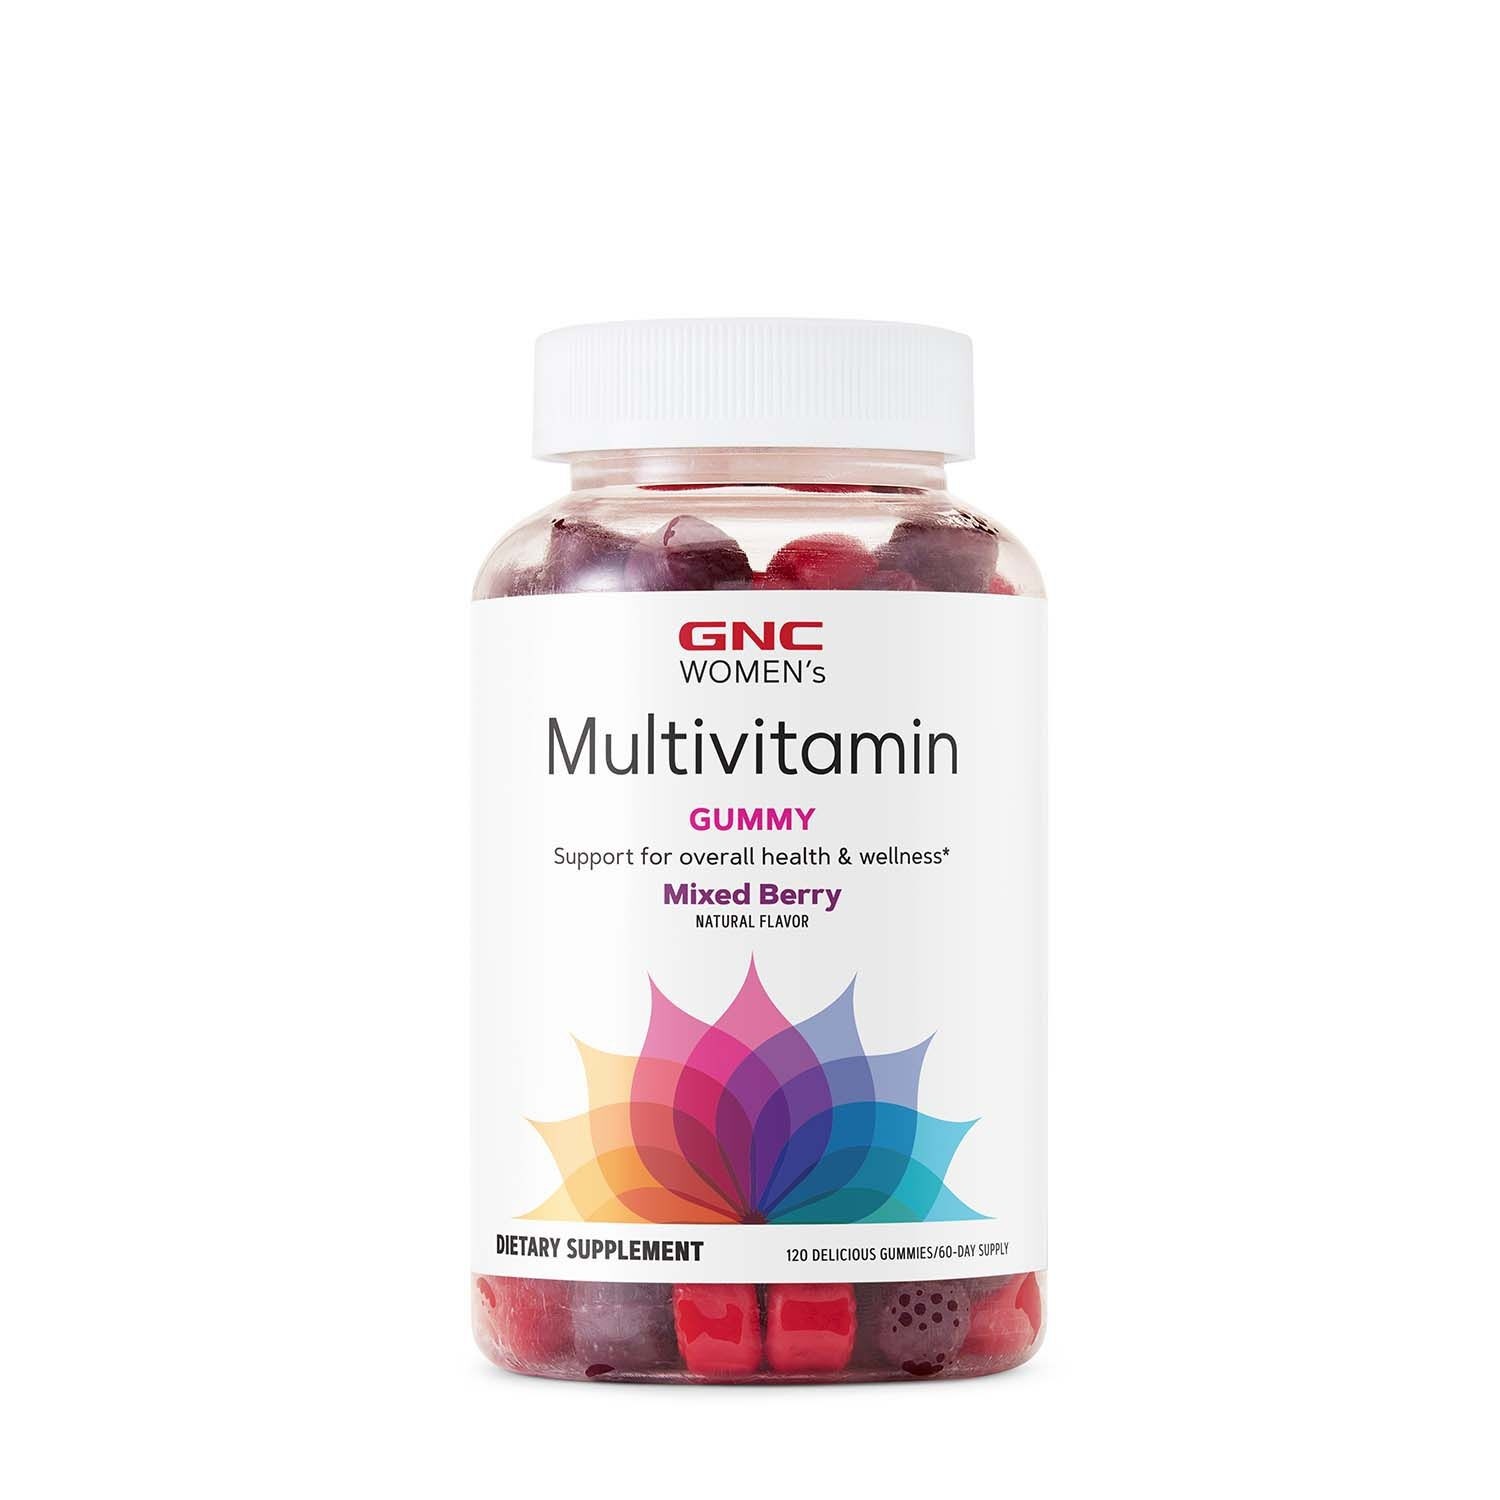 Jeleuri cu multivitamine pentru femei Women’s Multivitamin Gummy, 120 jeleuri, GNC